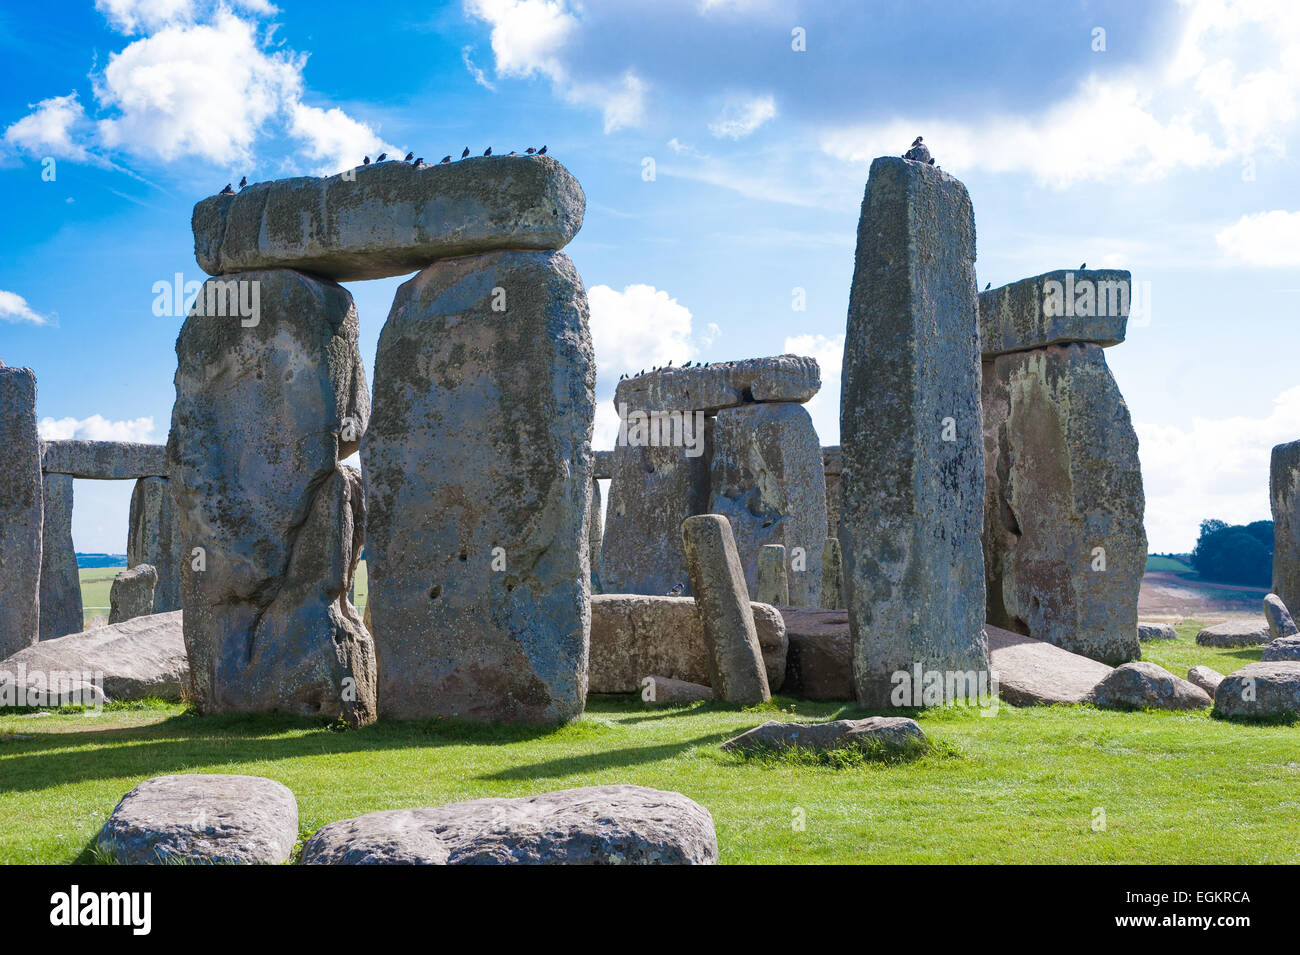 Ancien monument préhistorique de Stonehenge près de Salisbury, Angleterre - UNESCO Banque D'Images